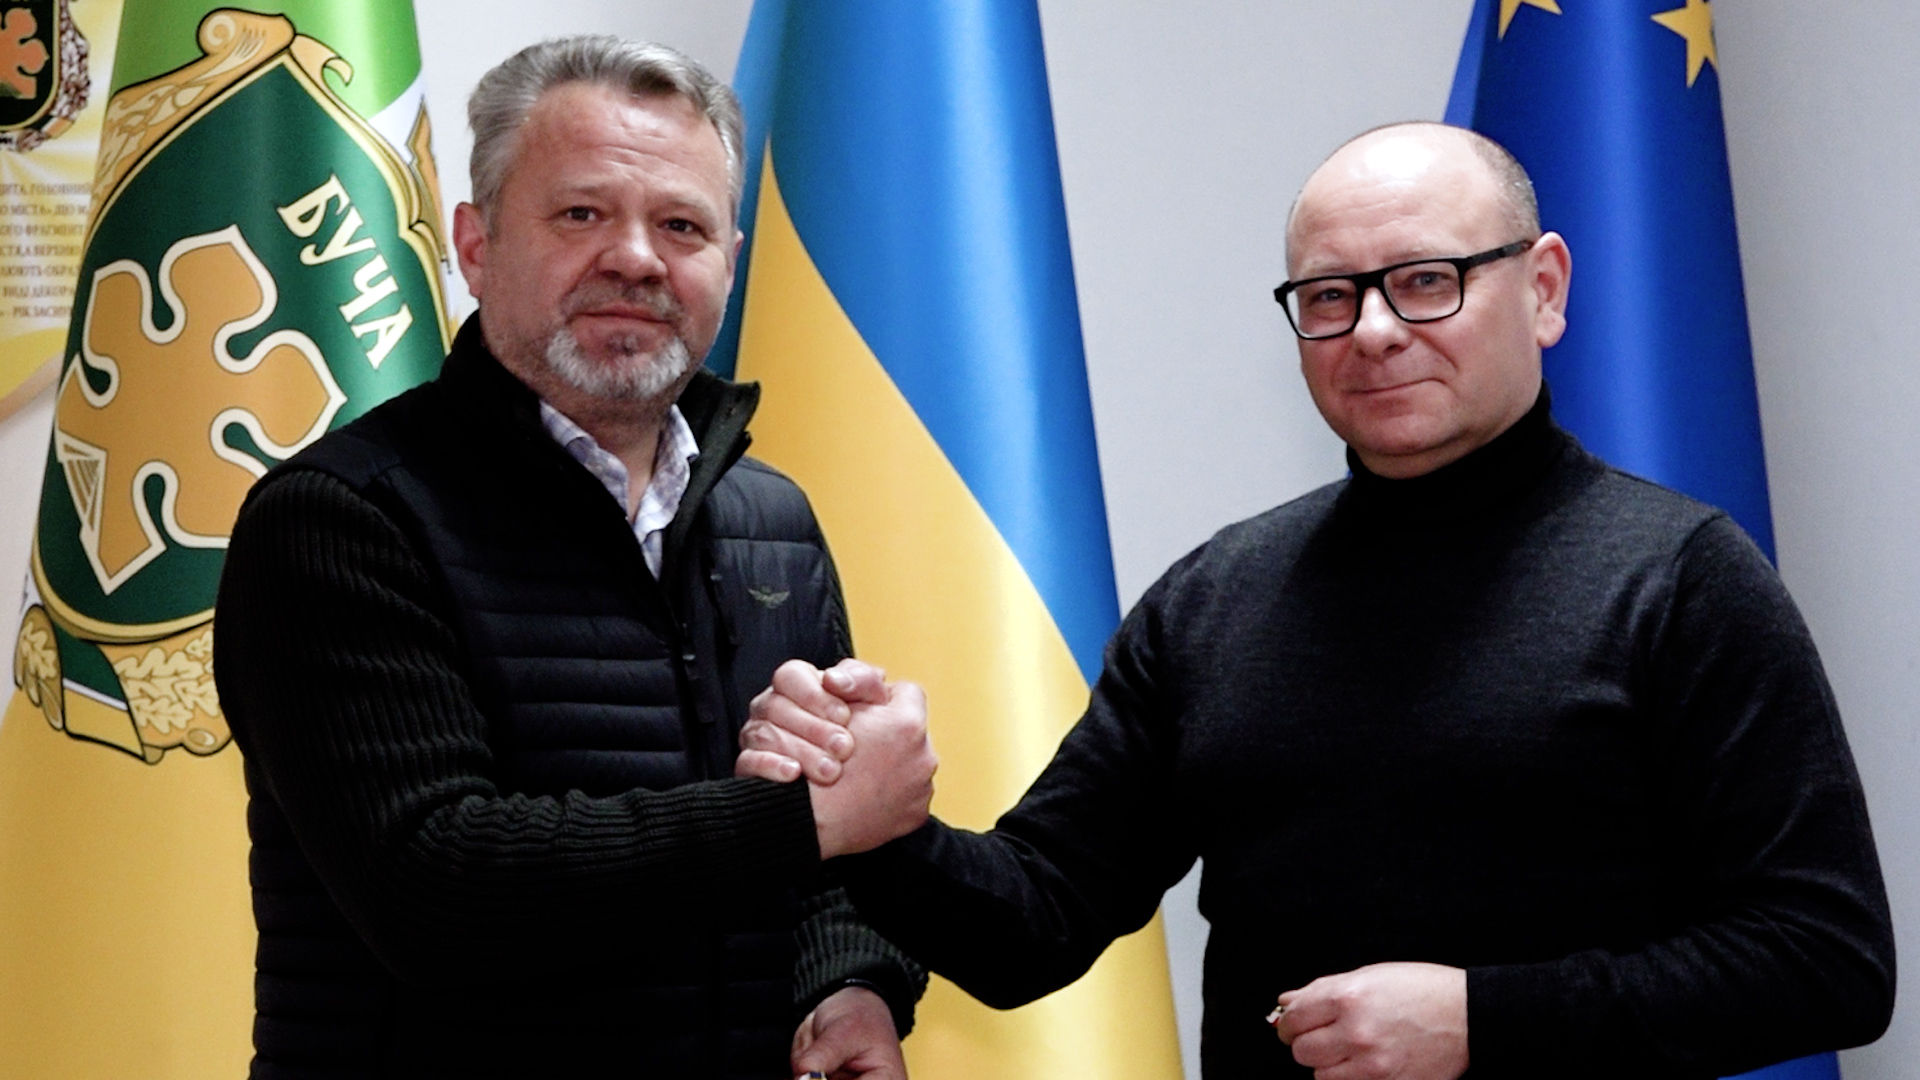 Solidarni z Ukrainą - solidarni z Buczą